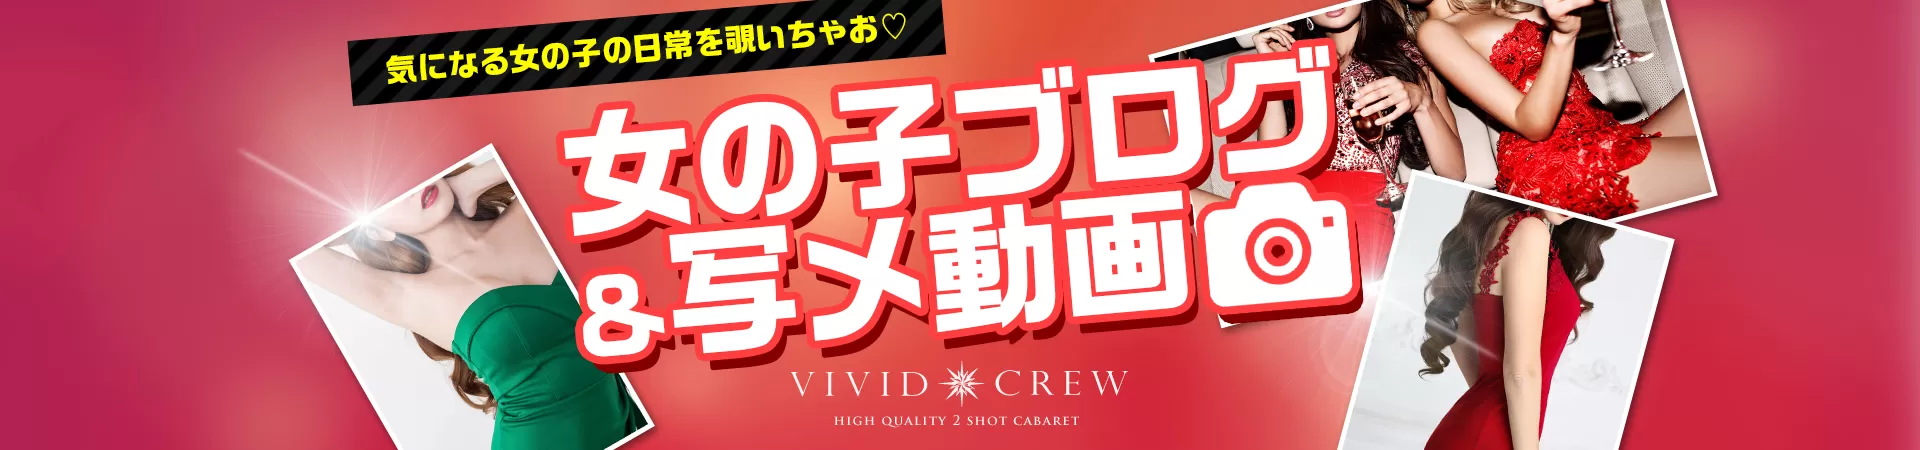 VIVID CREW 梅田堂山店